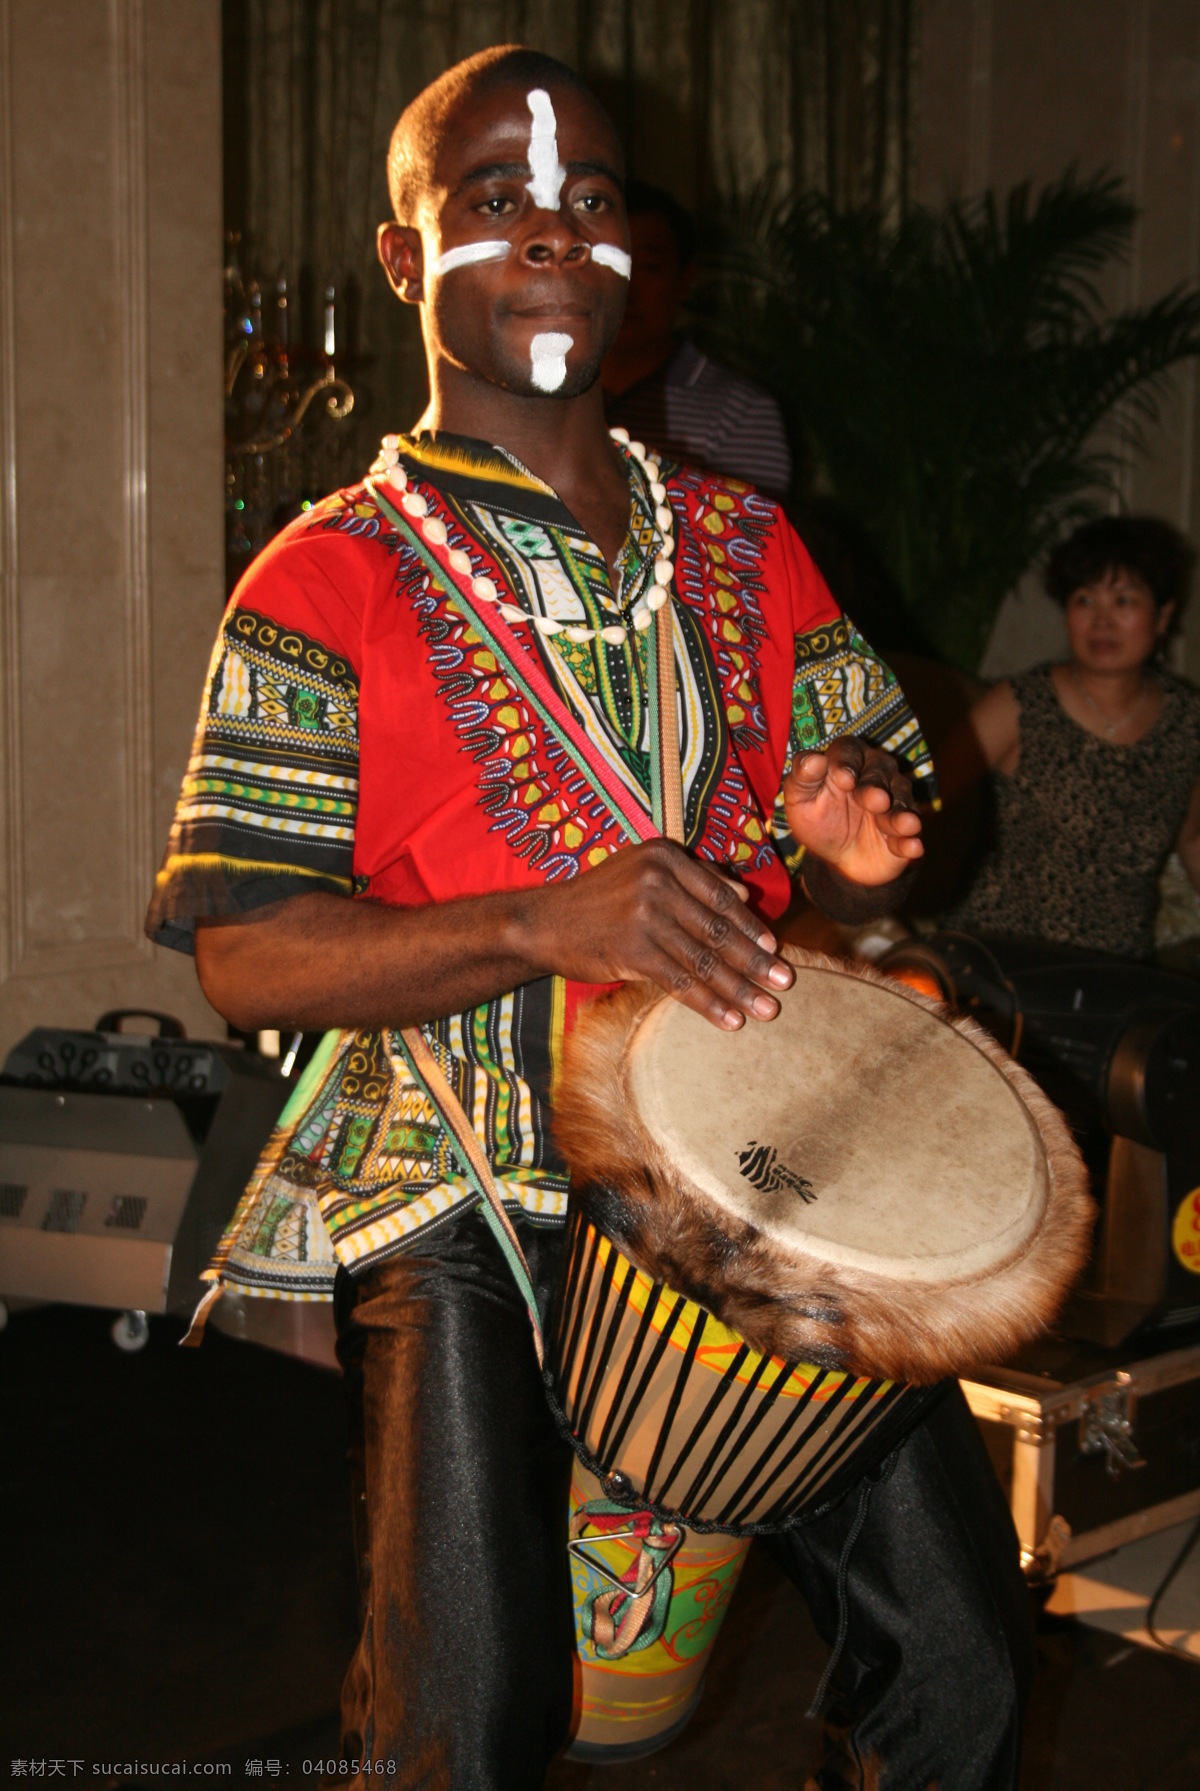 非洲鼓舞 文化 艺术 异国风琴 非洲舞蹈 黑人 鼓舞 民族特色 其他人物 人物图库